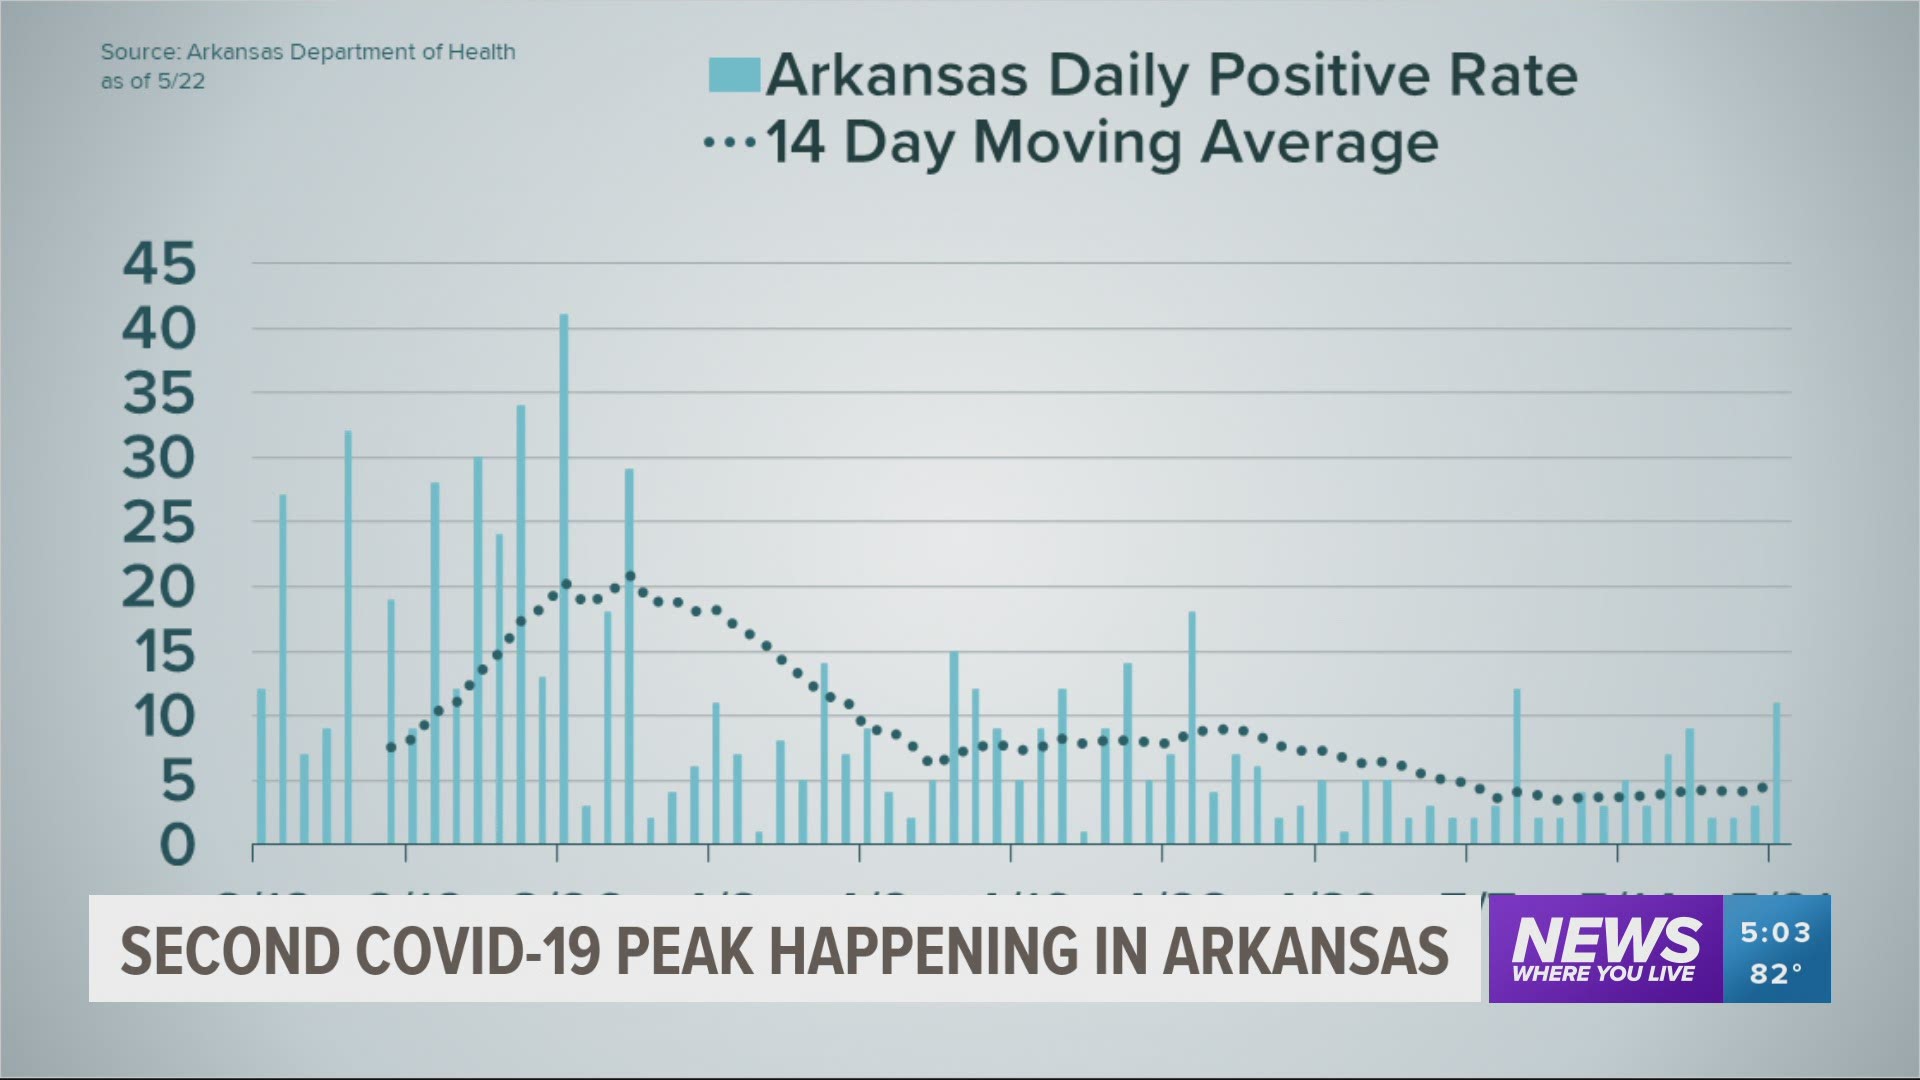 Second COVID-19 peak happening in Arkansas.